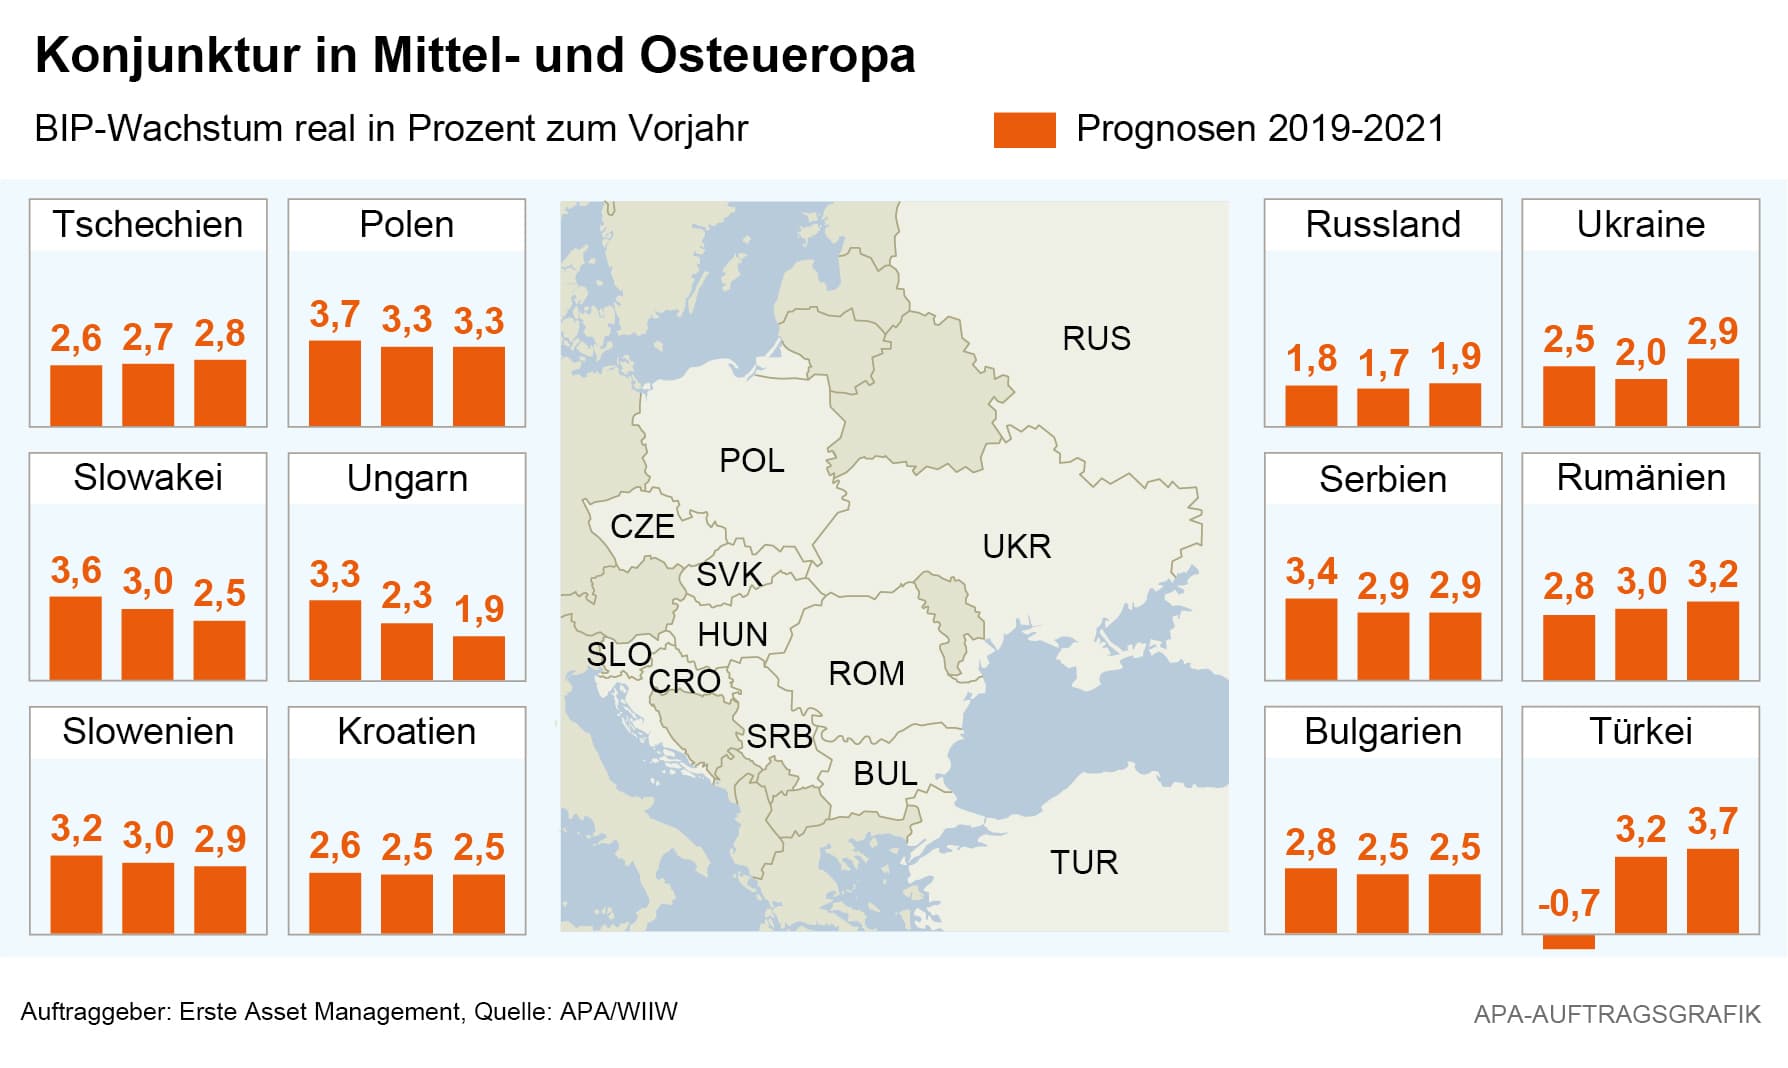 Konjunkturübersicht Mittel- und Osteuropa